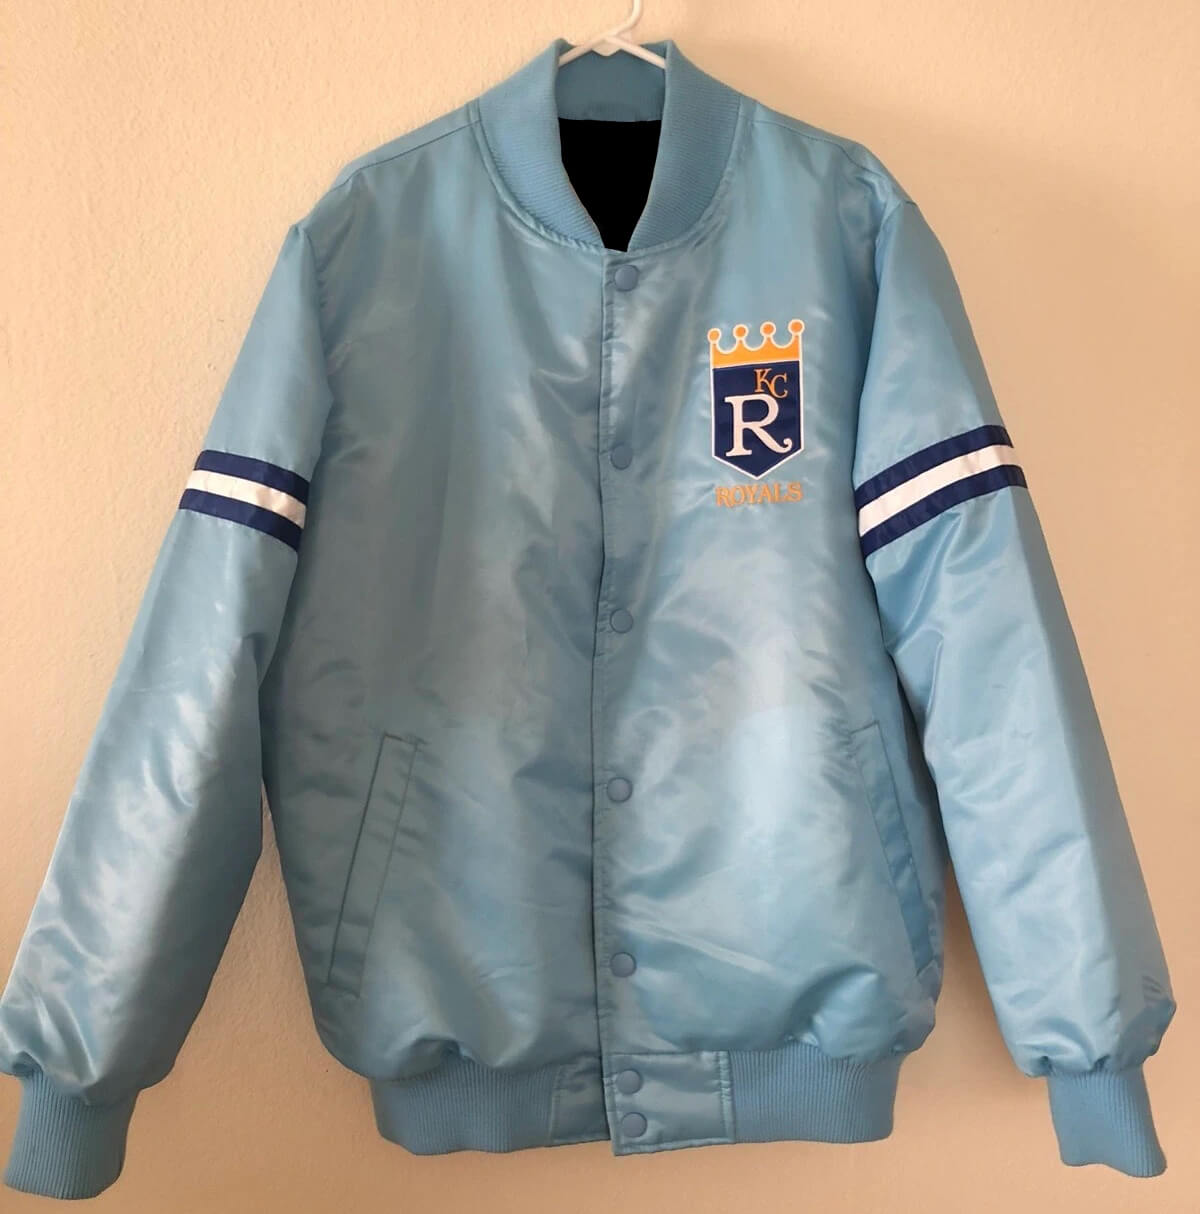 Maker of Jacket MLB Kansas City Royals Light Blue Satin